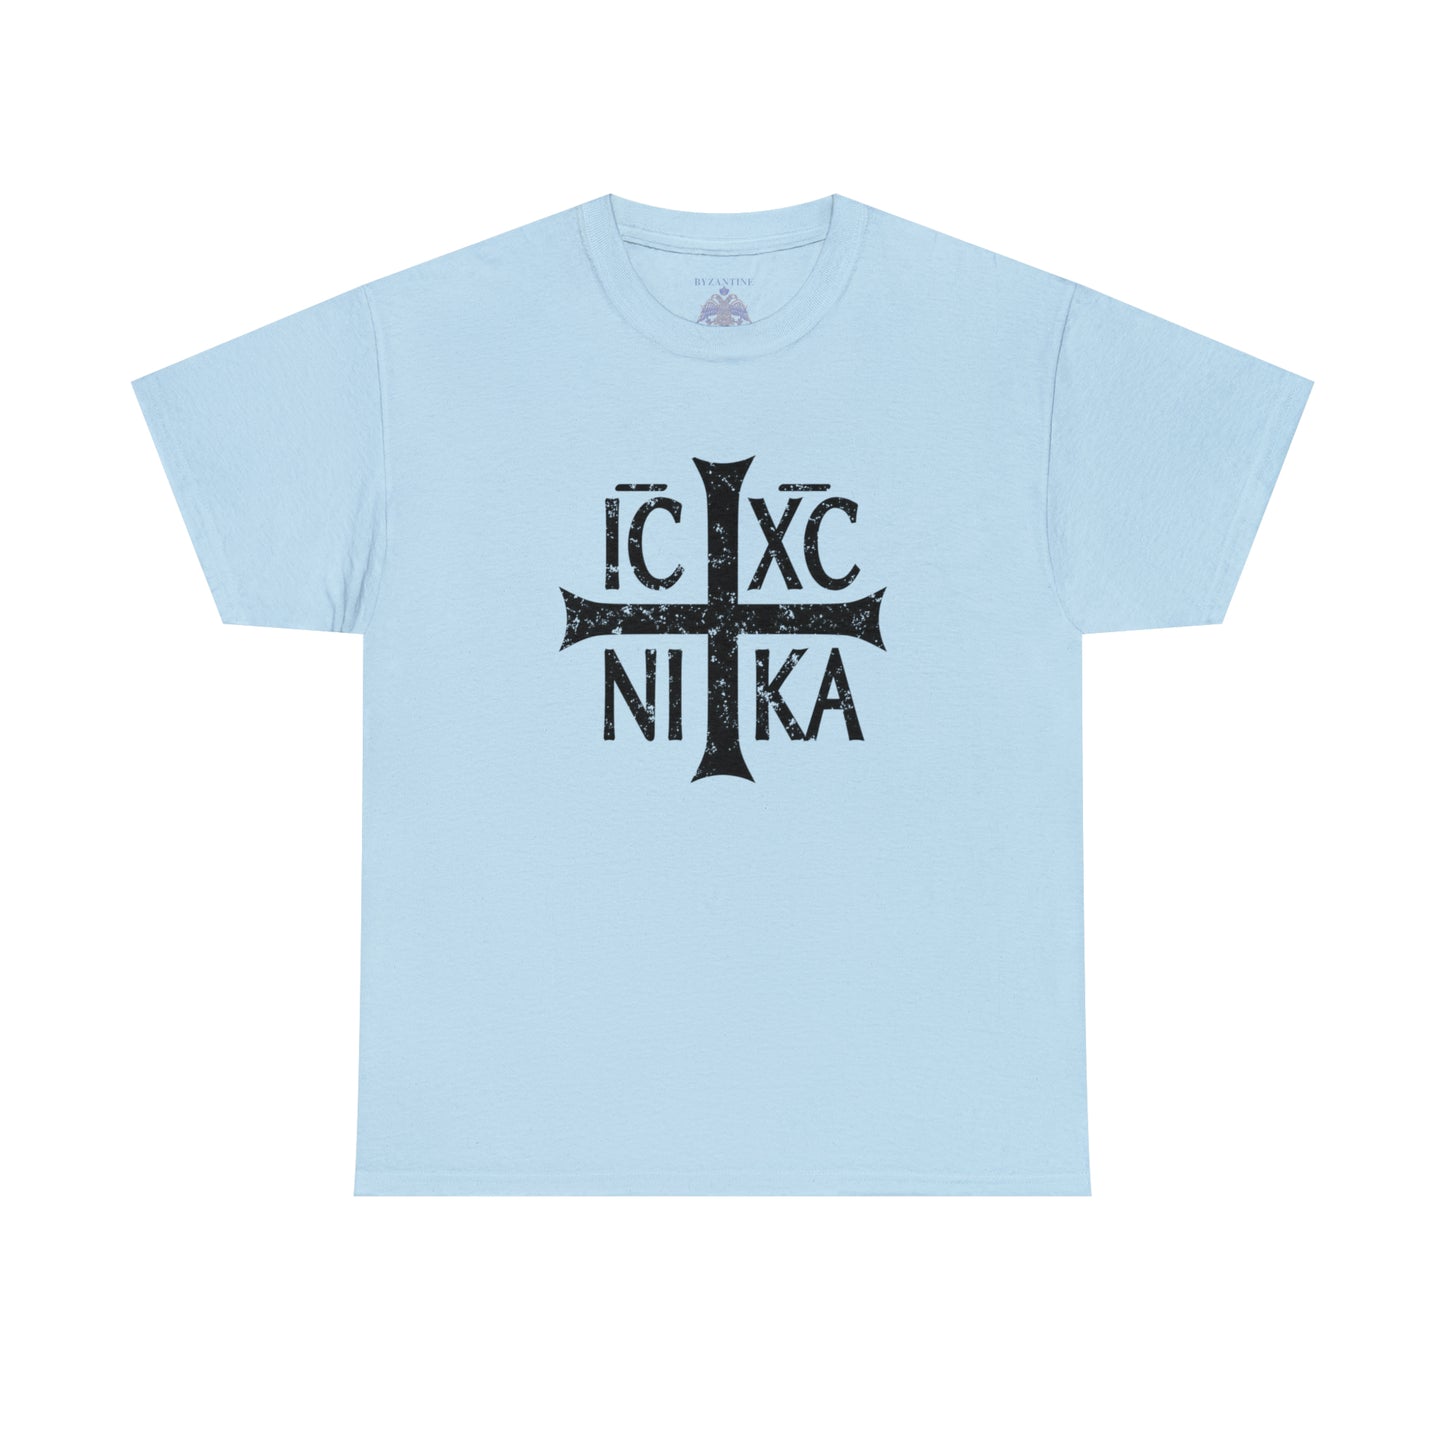 IC XC NIKA Unisex T-Shirt